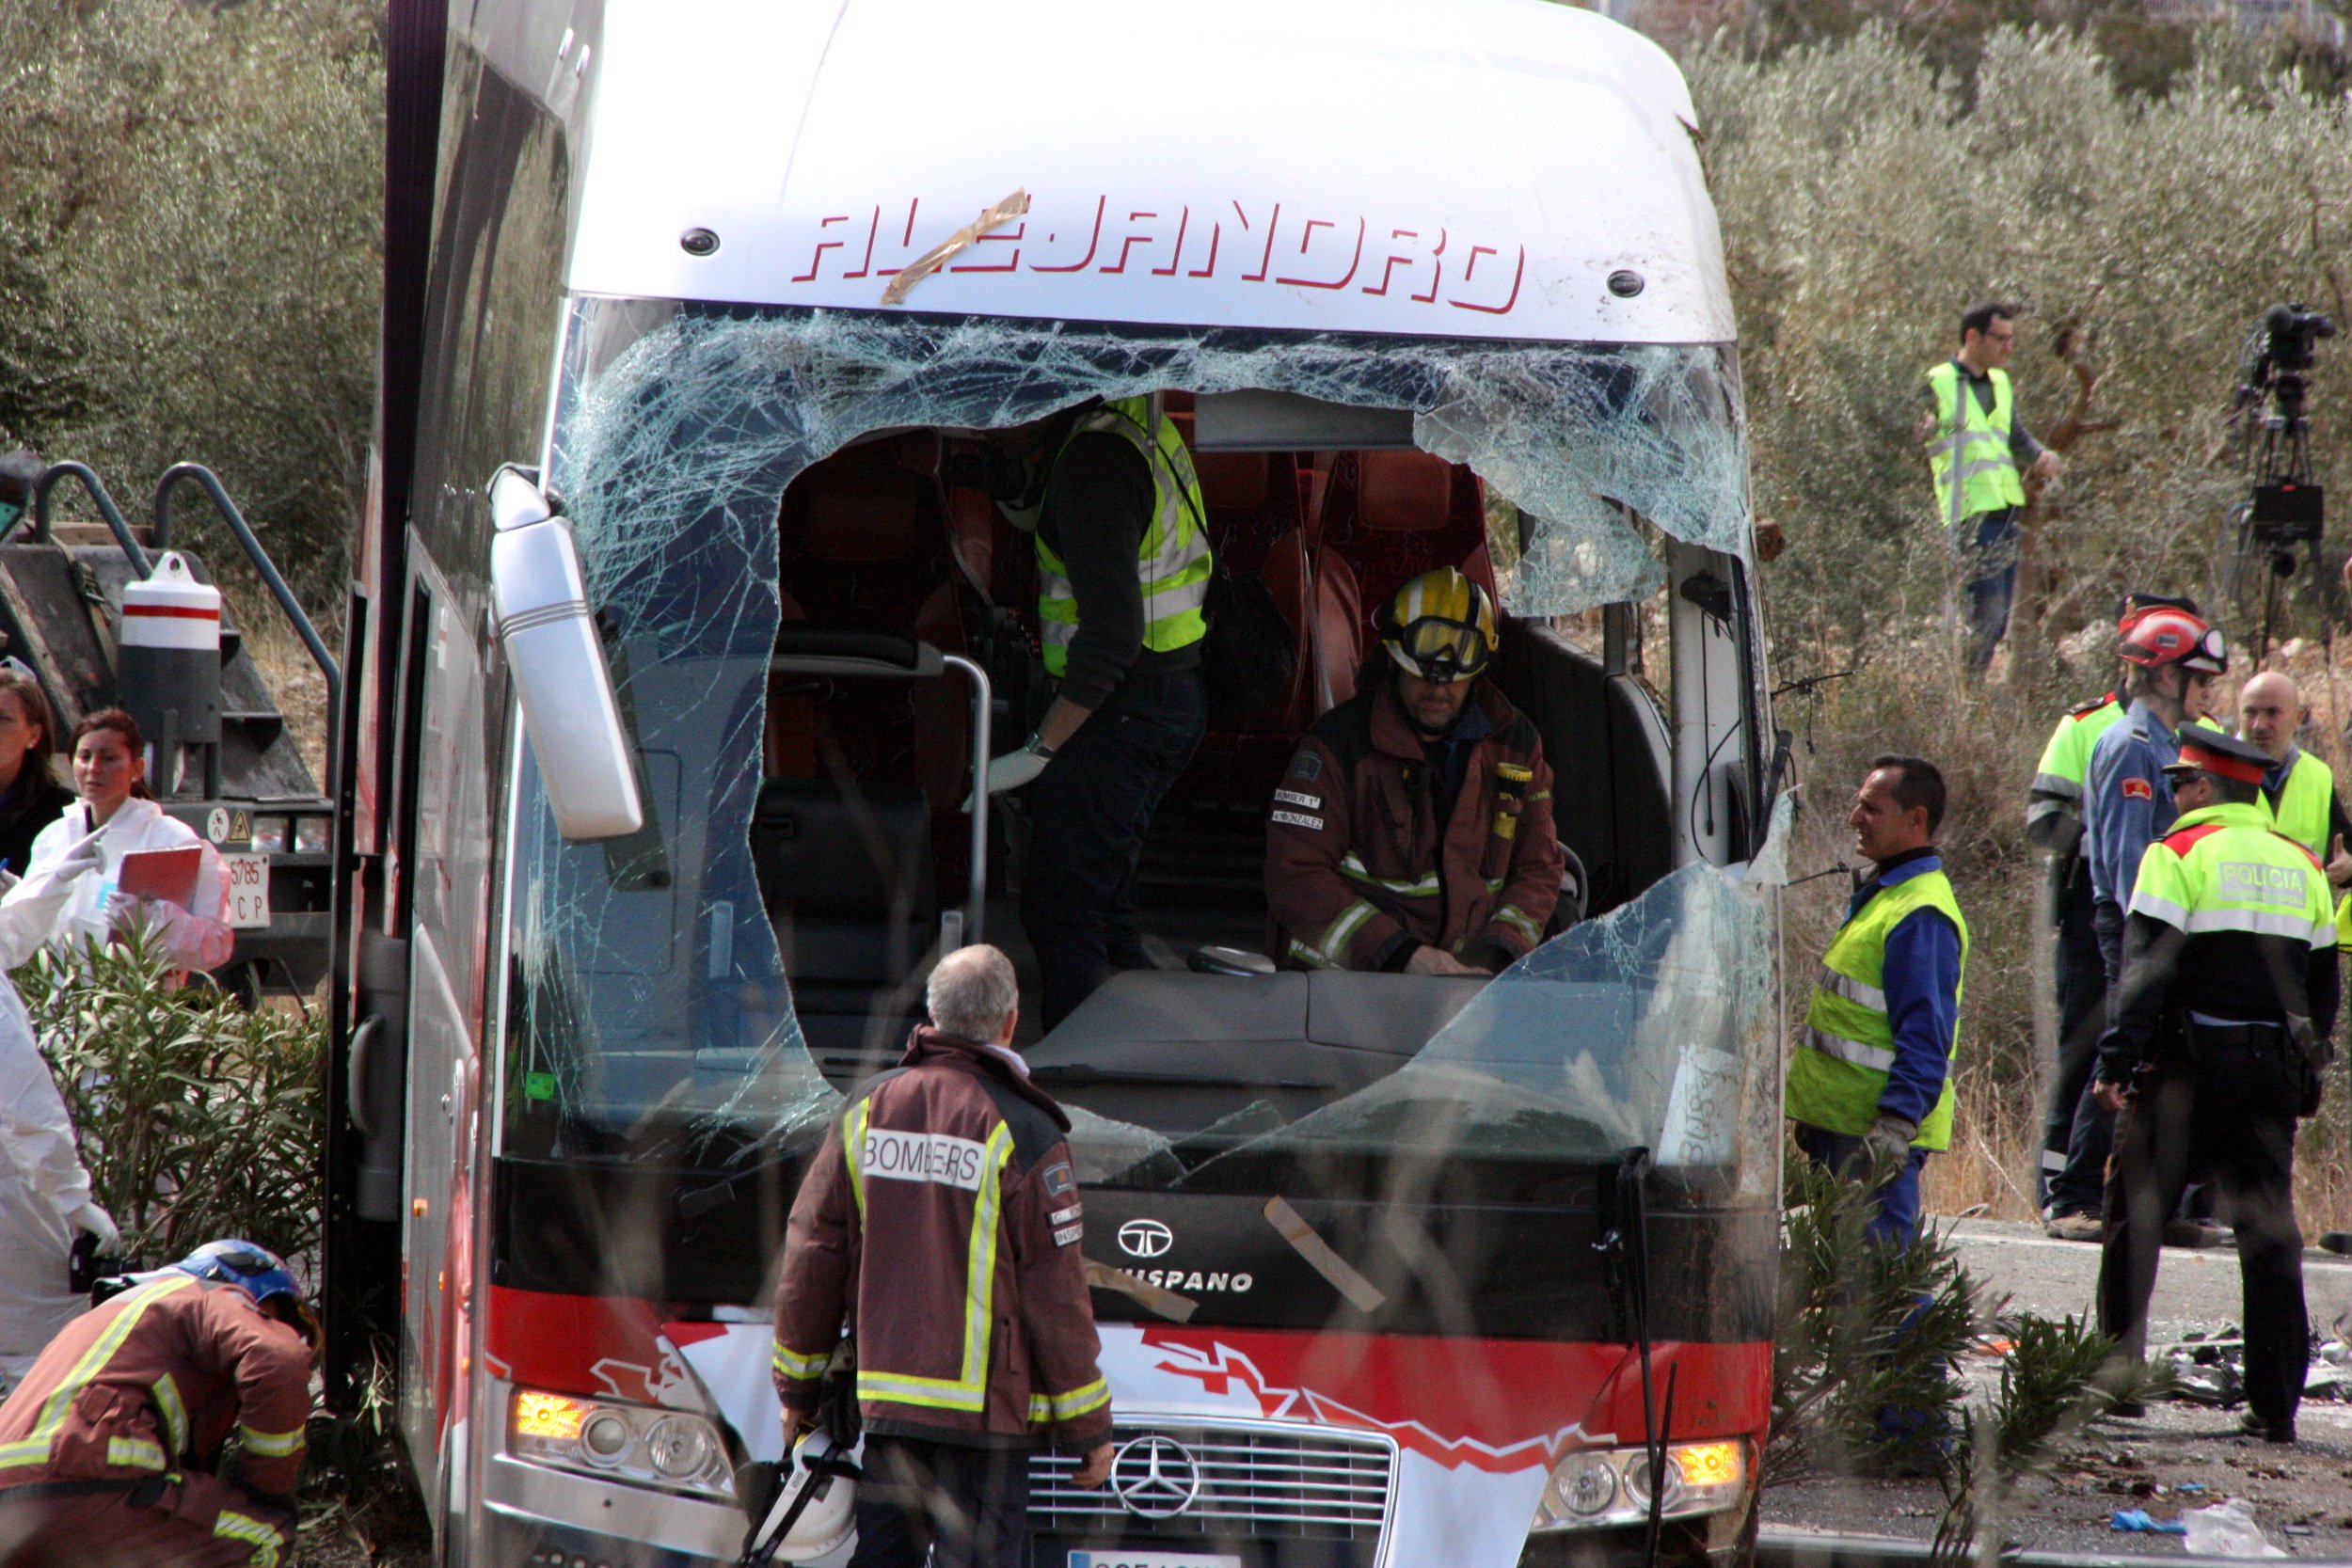 Efectius de Bombers treballant dins l'autobús accidentat a l'AP-7 el 20 de març de 2016 / ROGER SEGURA - ACN